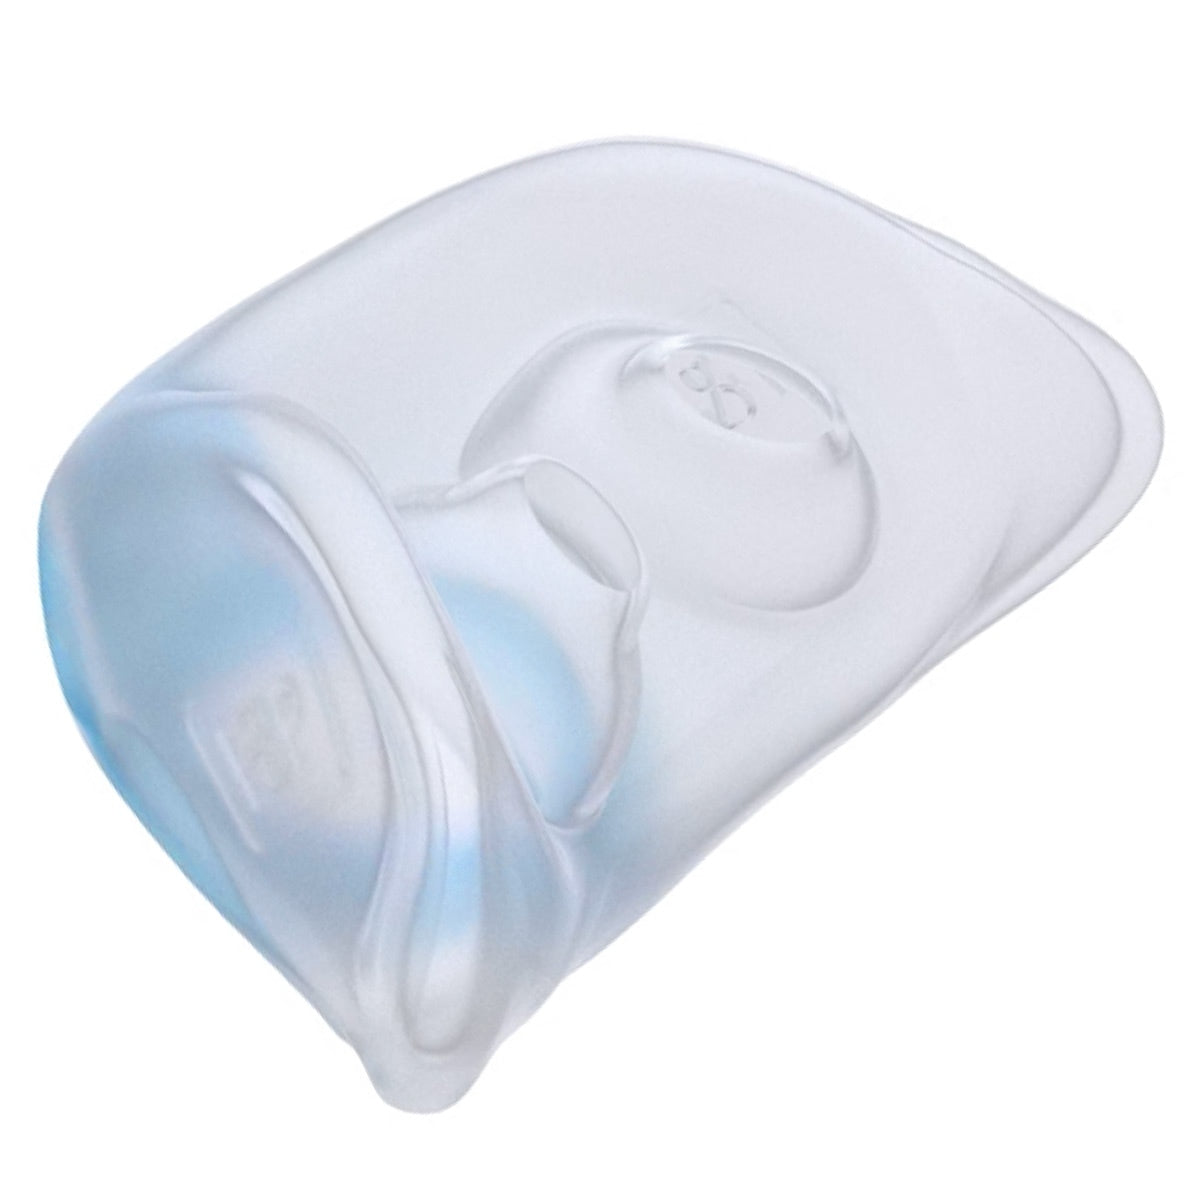 AirPillow Nasal Seal for Brevida CPAP/BiPAP Masks